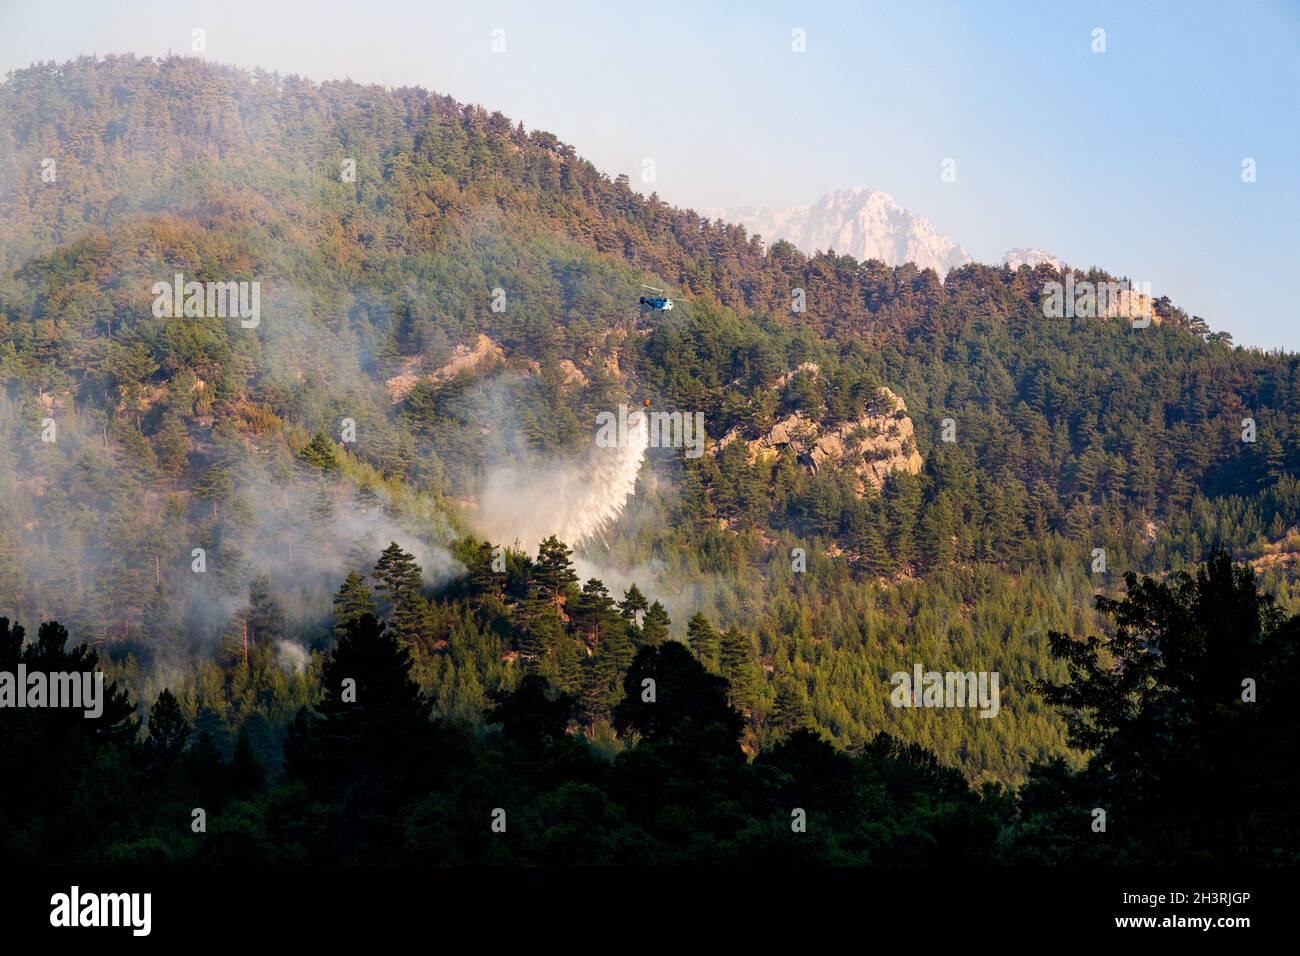 L'elicottero Wildfire fa cadere l'acqua su un fuoco in un terreno roccioso e ripido con un secchio d'acqua. Le montagne sono coperte da fitte pinete. Foto Stock